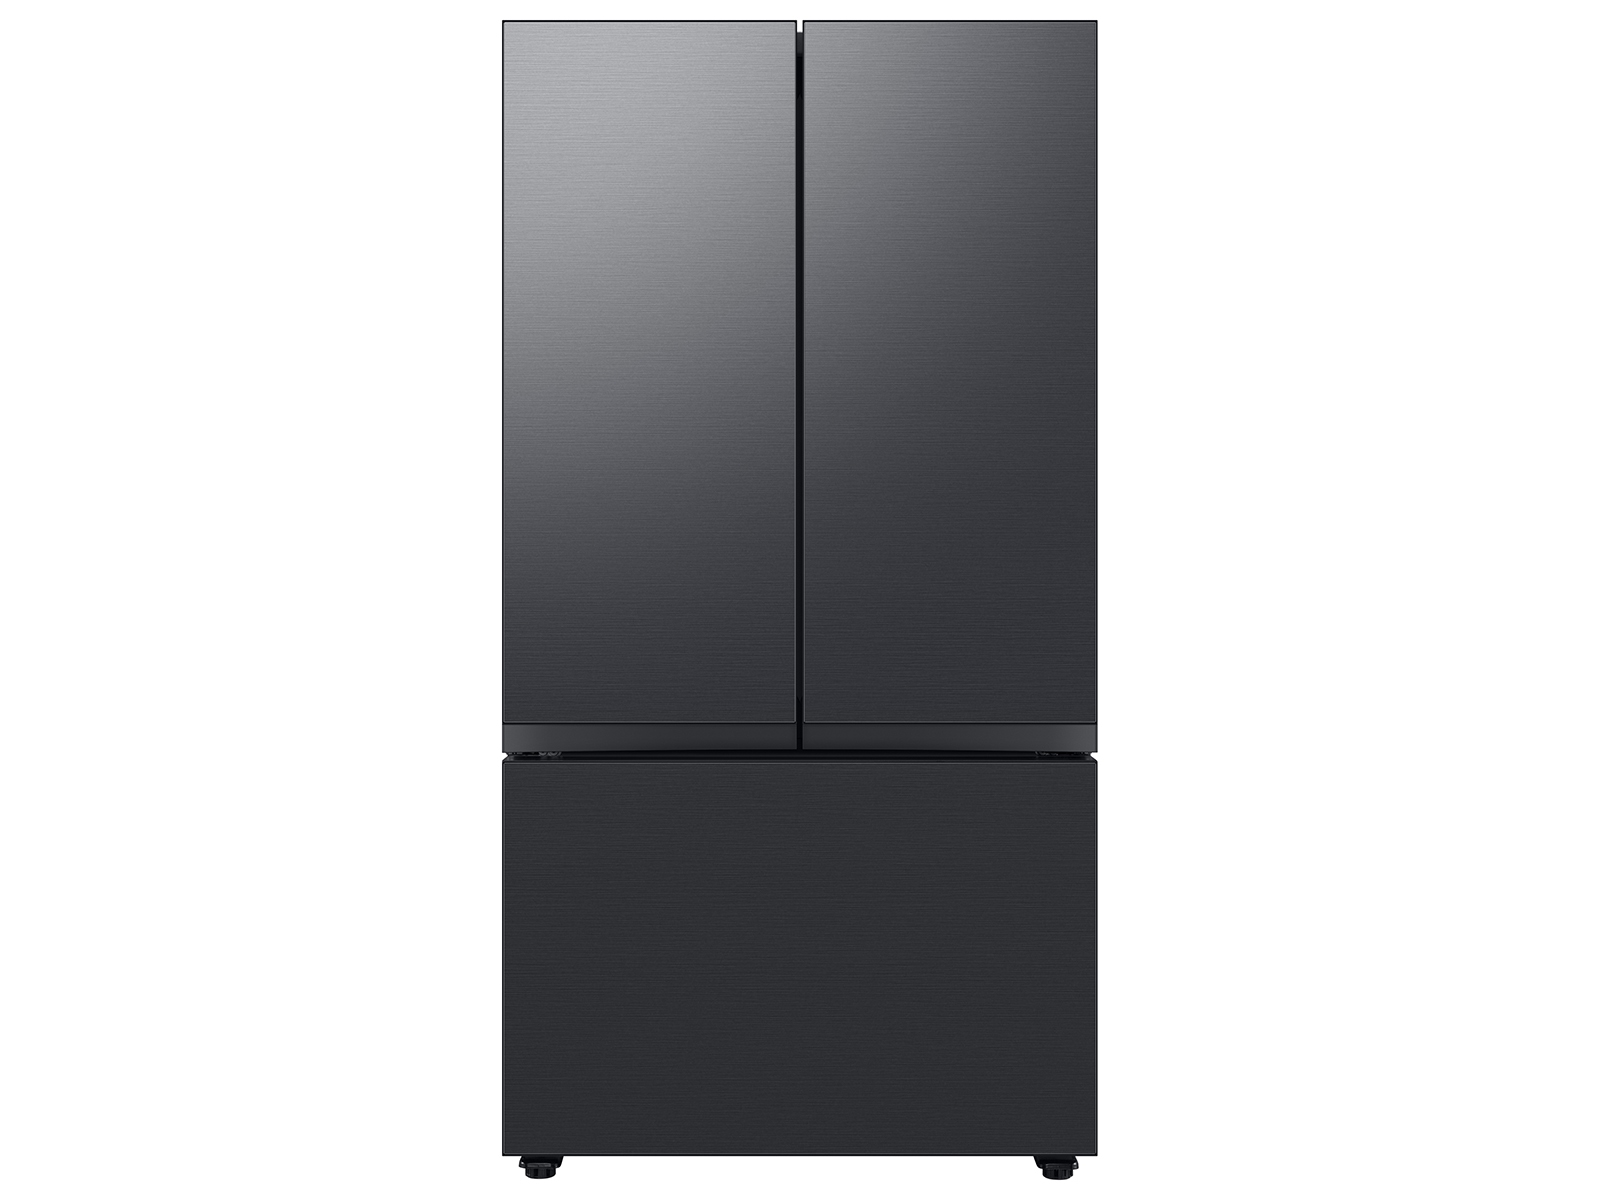 Bespoke 3-Door French Door Refrigerator (24 cu. ft.) with Beverage Center™ in Matte Black Steel